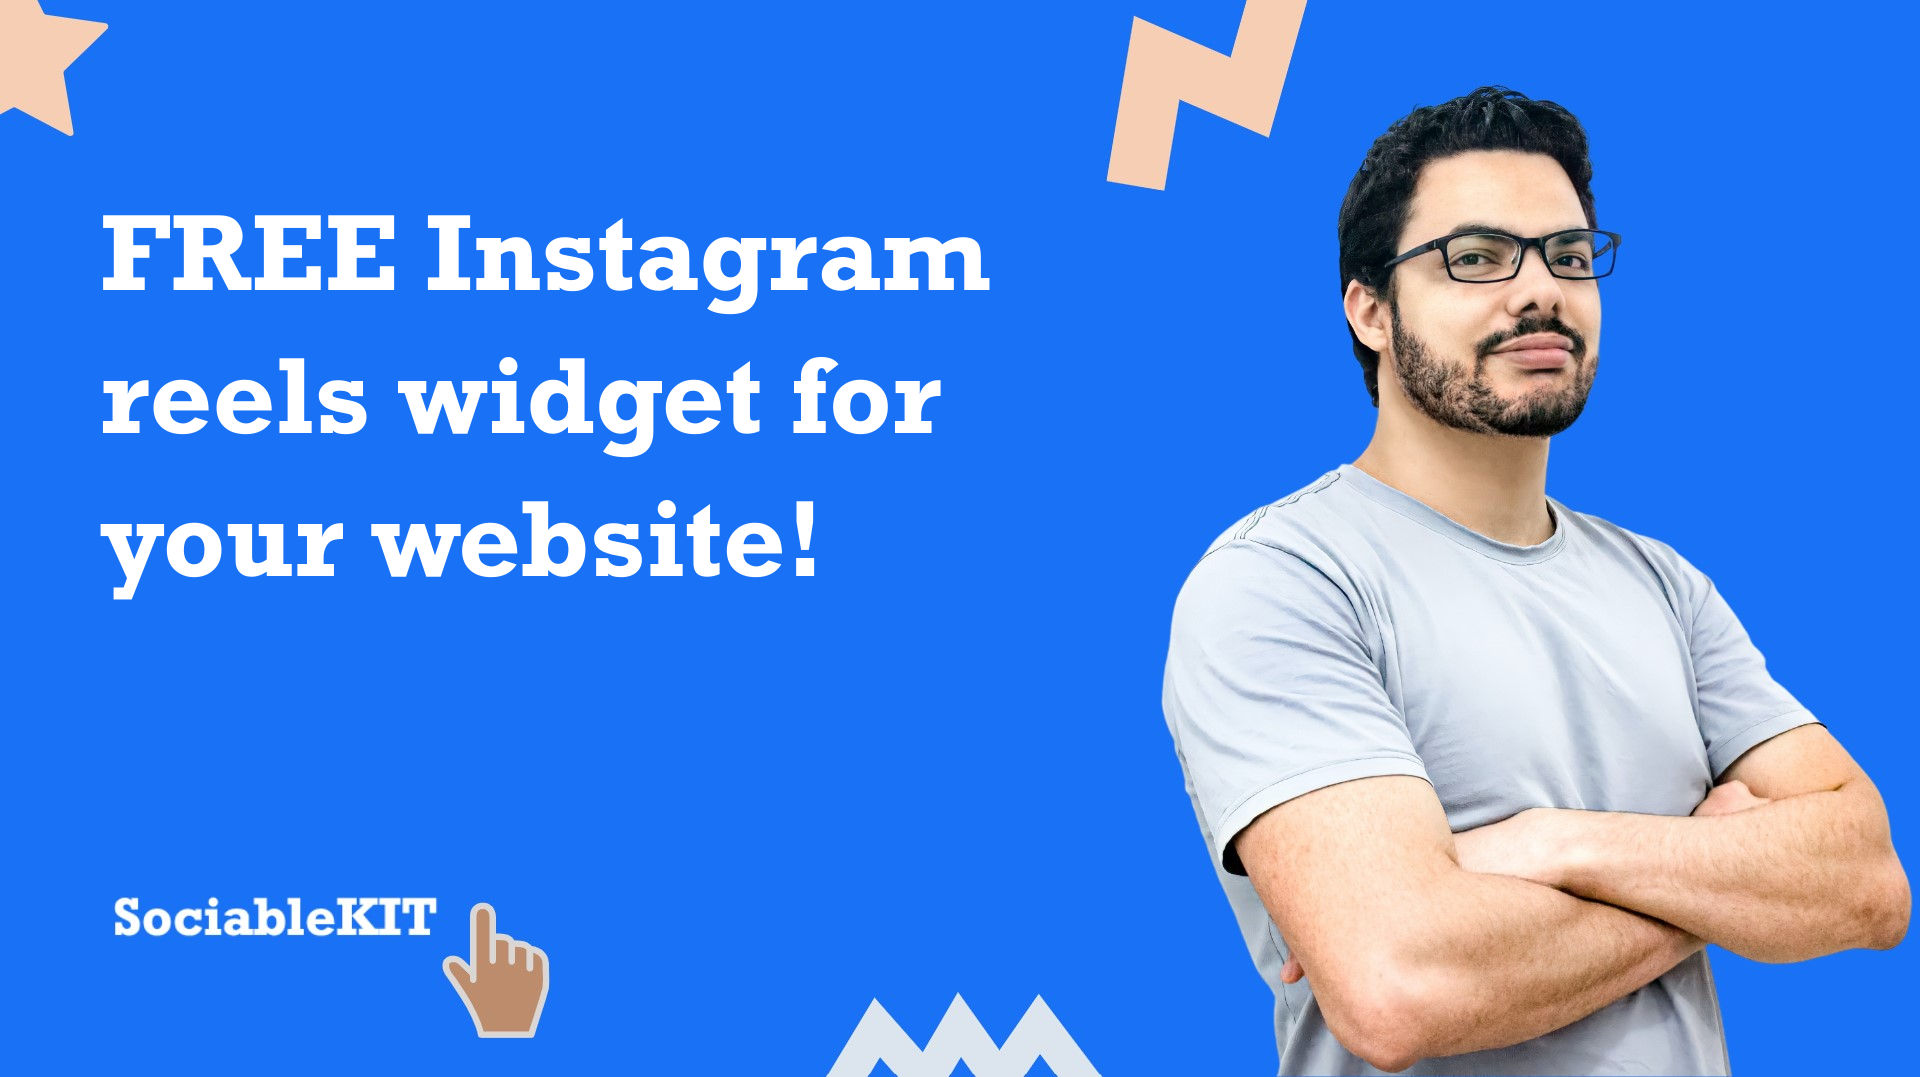 Free Instagram reels widget for your website